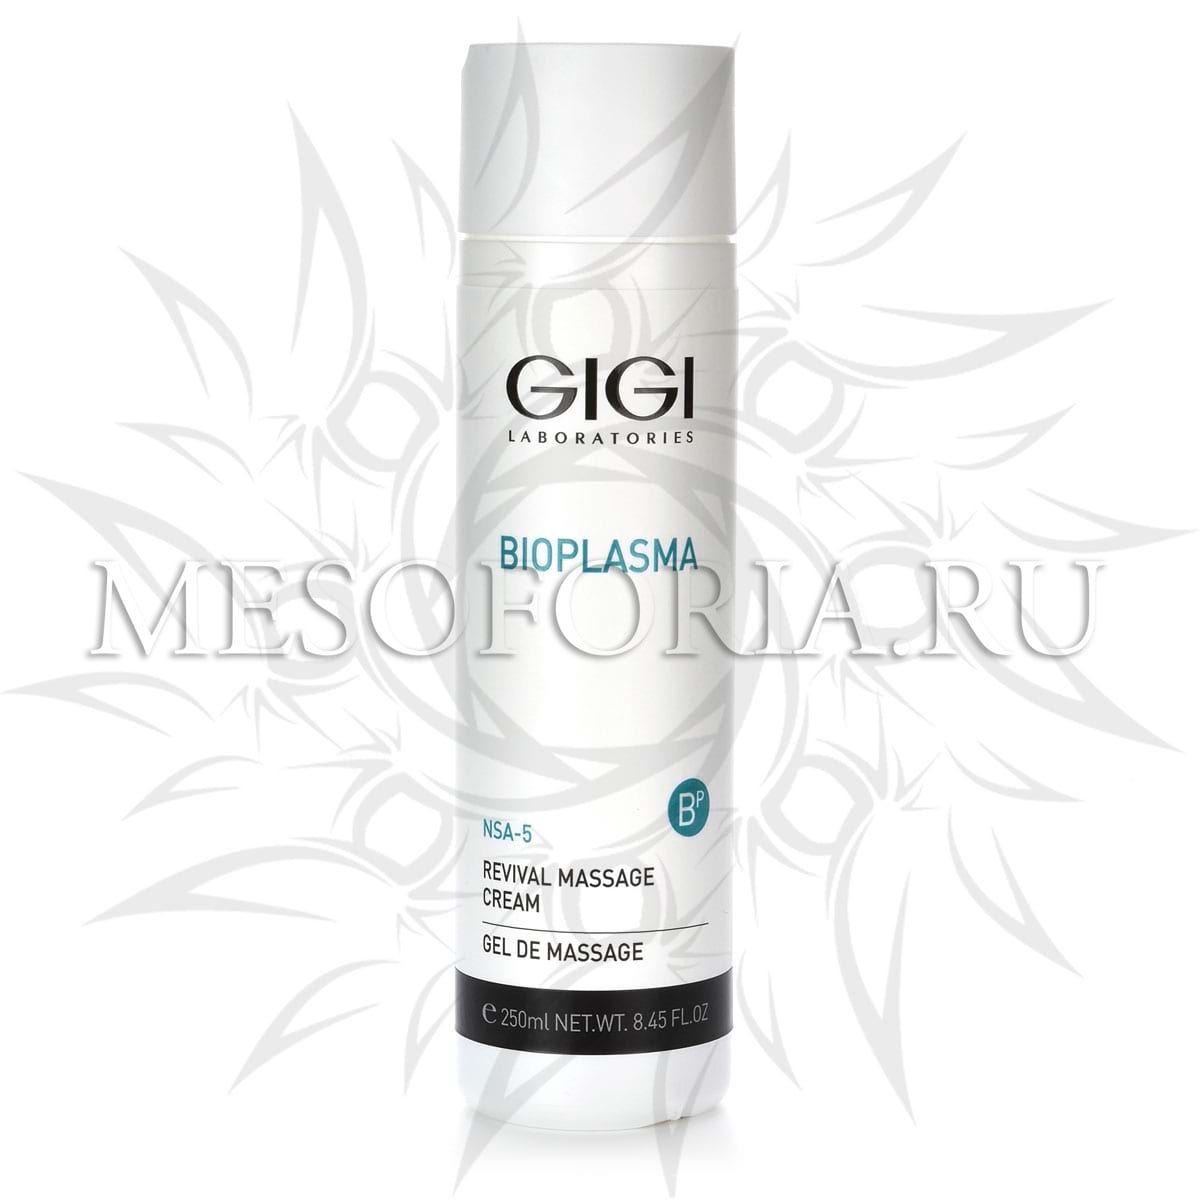 Крем массажный омолаживающий / Revival Massage Cream, Bioplasma, GiGi (Джи Джи) – 250 мл